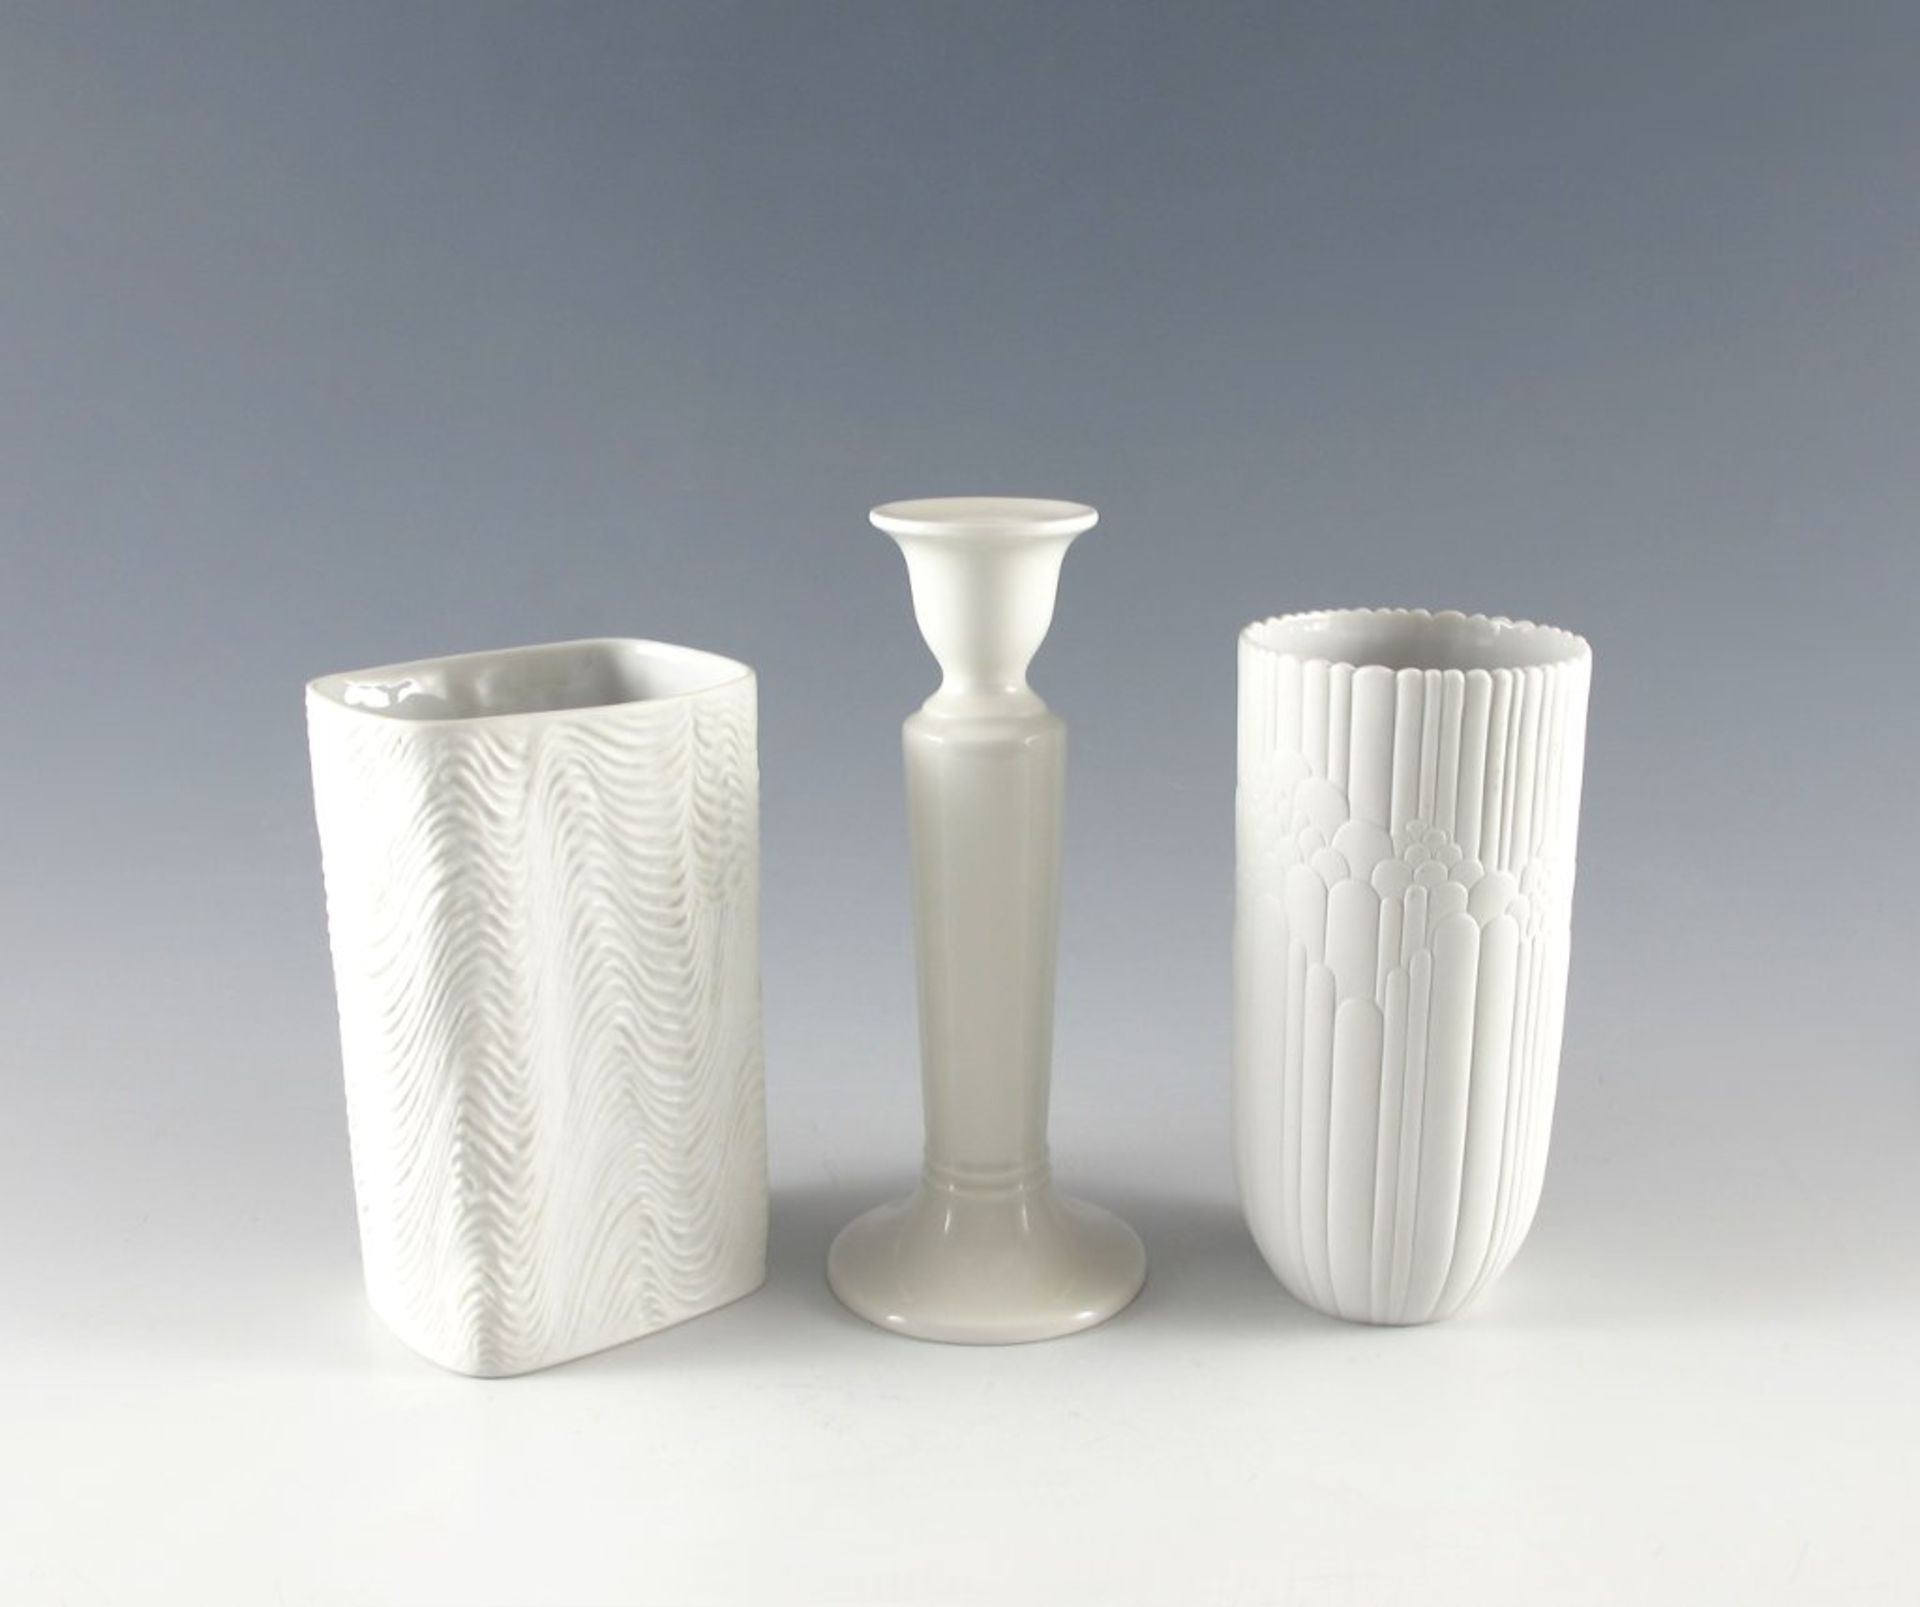 Rosenthal-Konvolut: Kerzenleuchter und zwei Vasen. Monochrom weiß. Leuchter H 21 cm